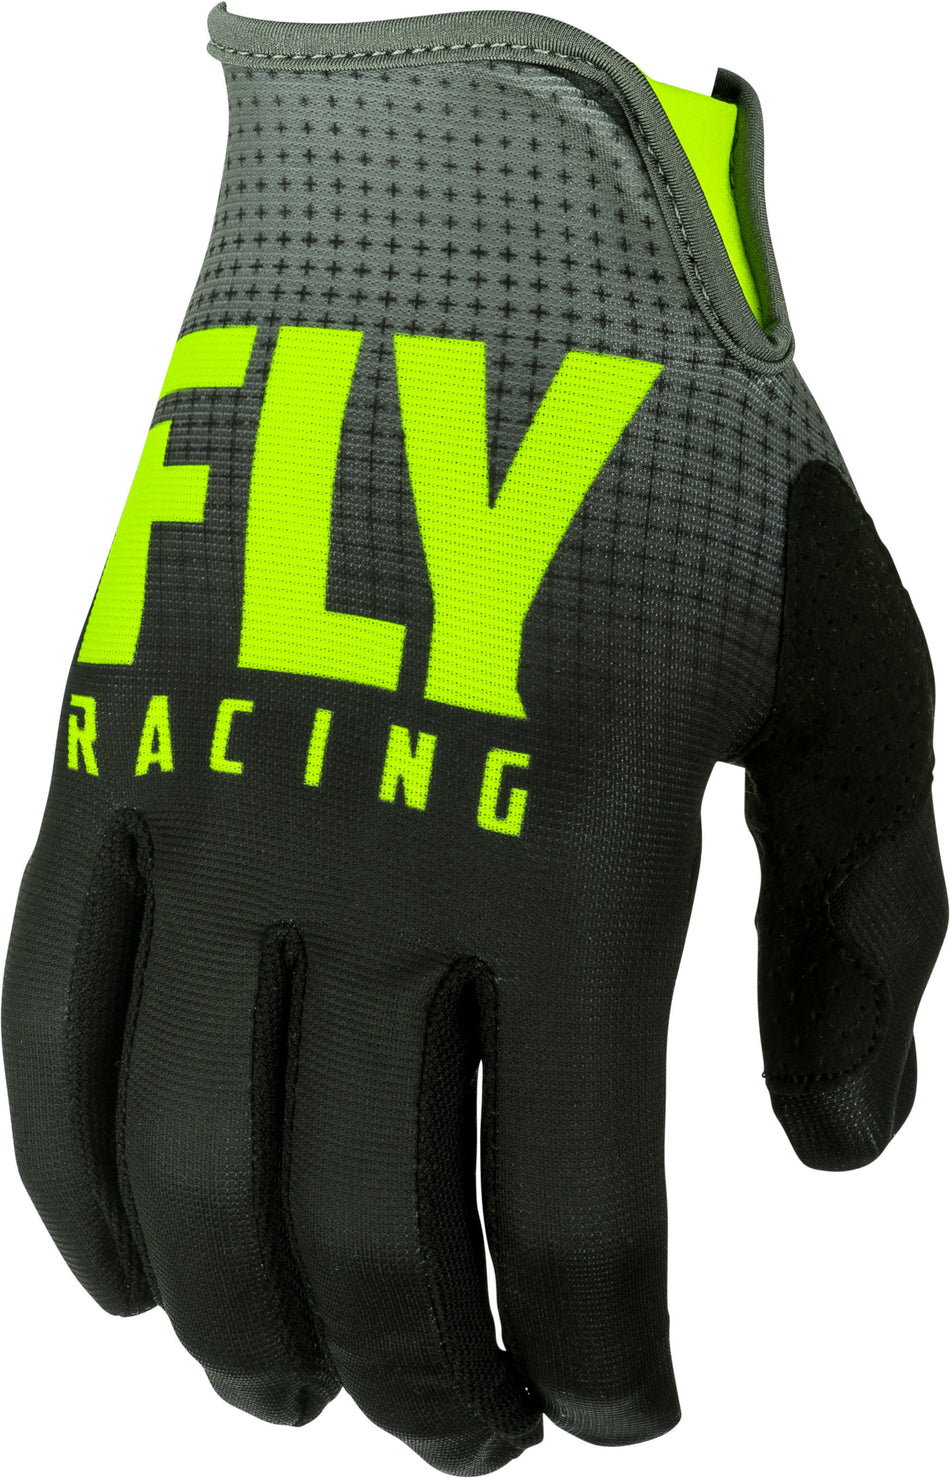 FLY RACING Lite Gloves Black/Hi-Vis Sz 04 372-01004